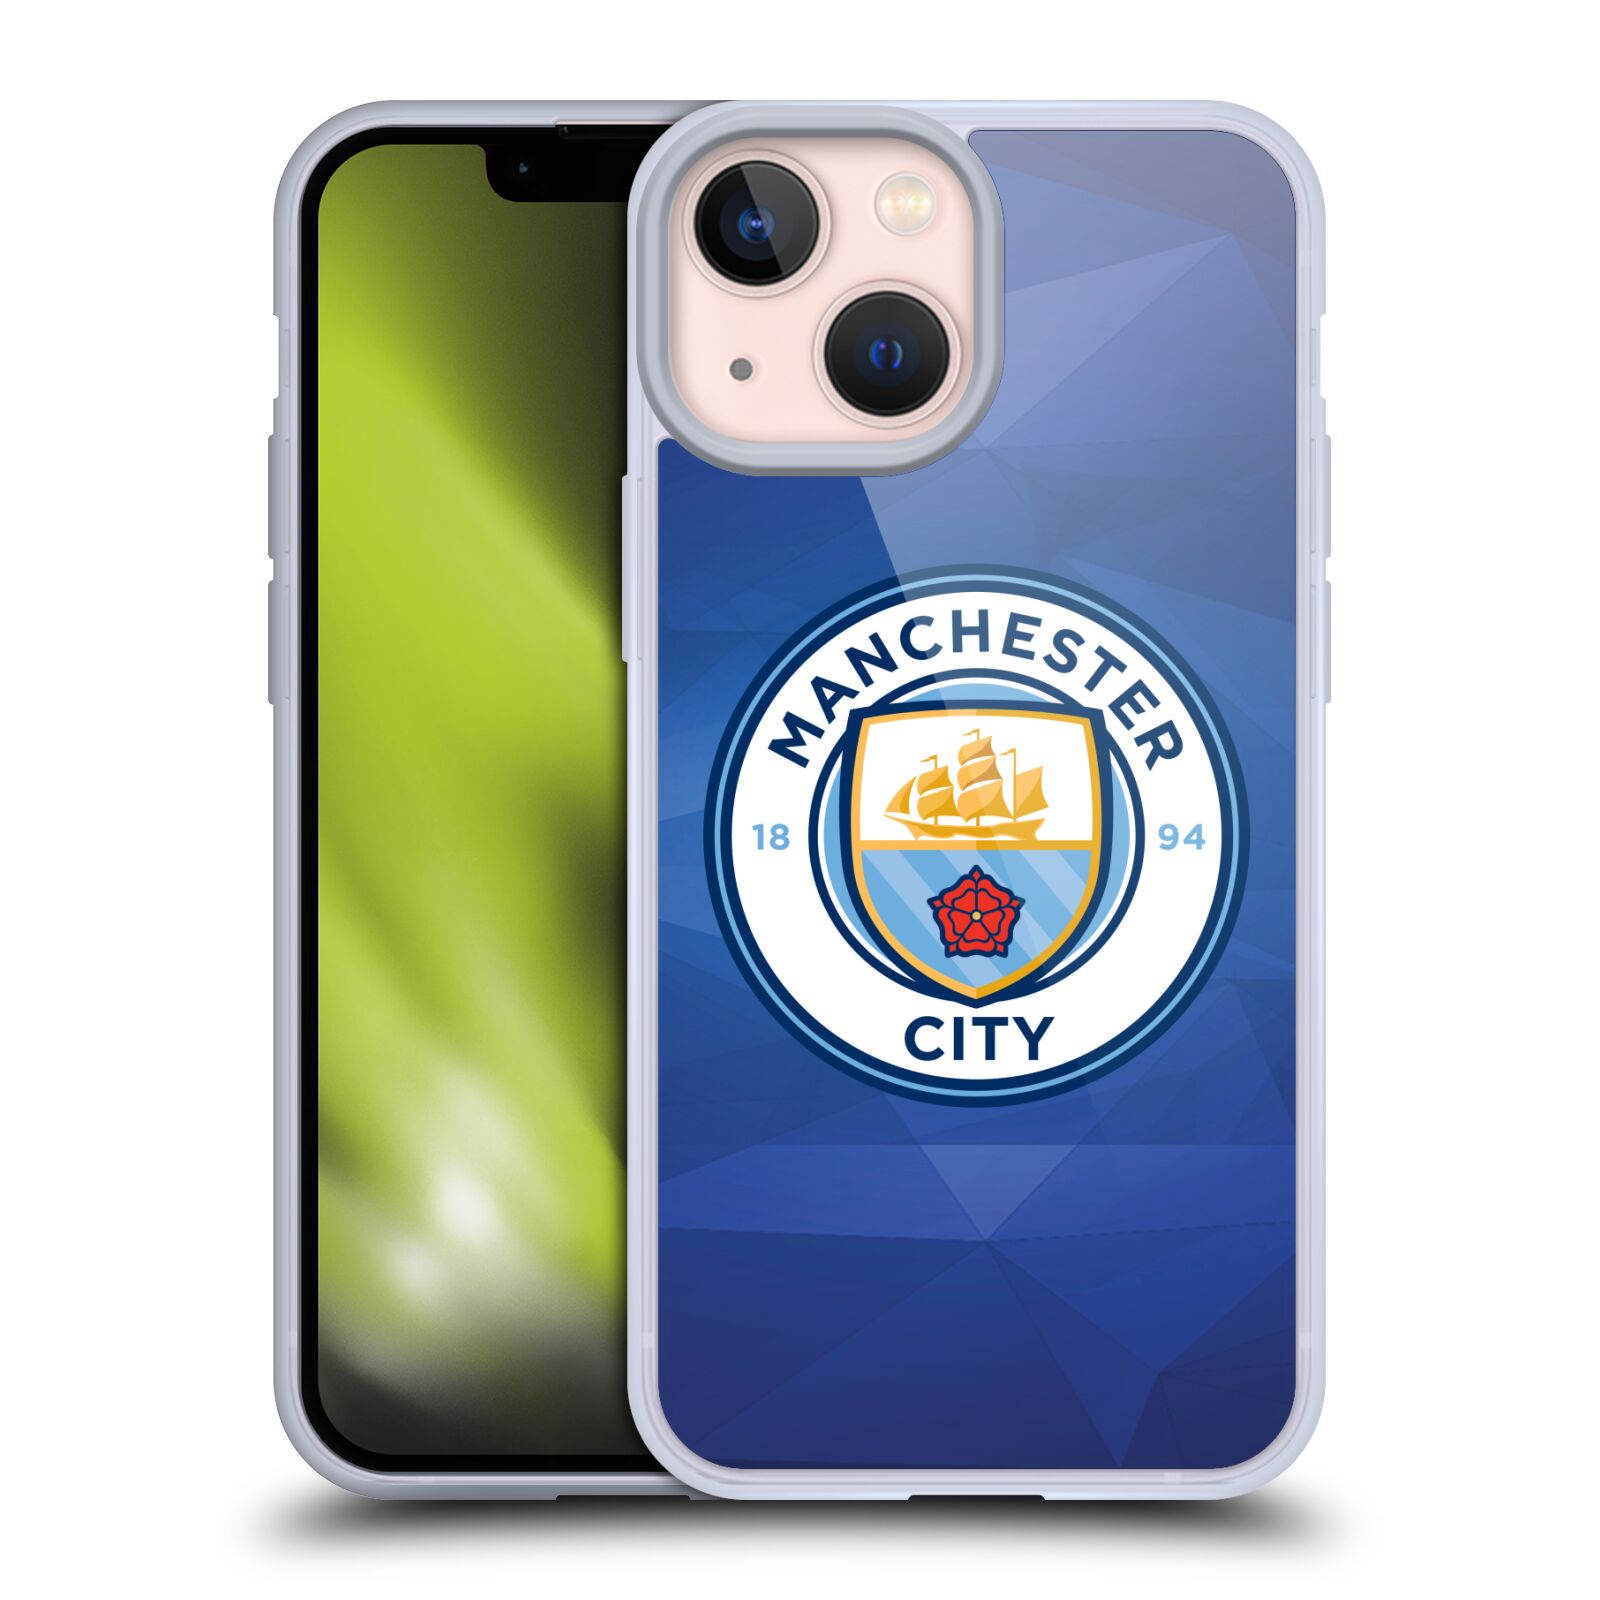 Silikonové pouzdro na mobil Apple iPhone 13 Mini - Head Case - Manchester City FC - Modré nové logo (Silikonový kryt, obal, pouzdro na mobilní telefon Apple iPhone 13 Mini s motivem Manchester City FC - Modré nové logo)